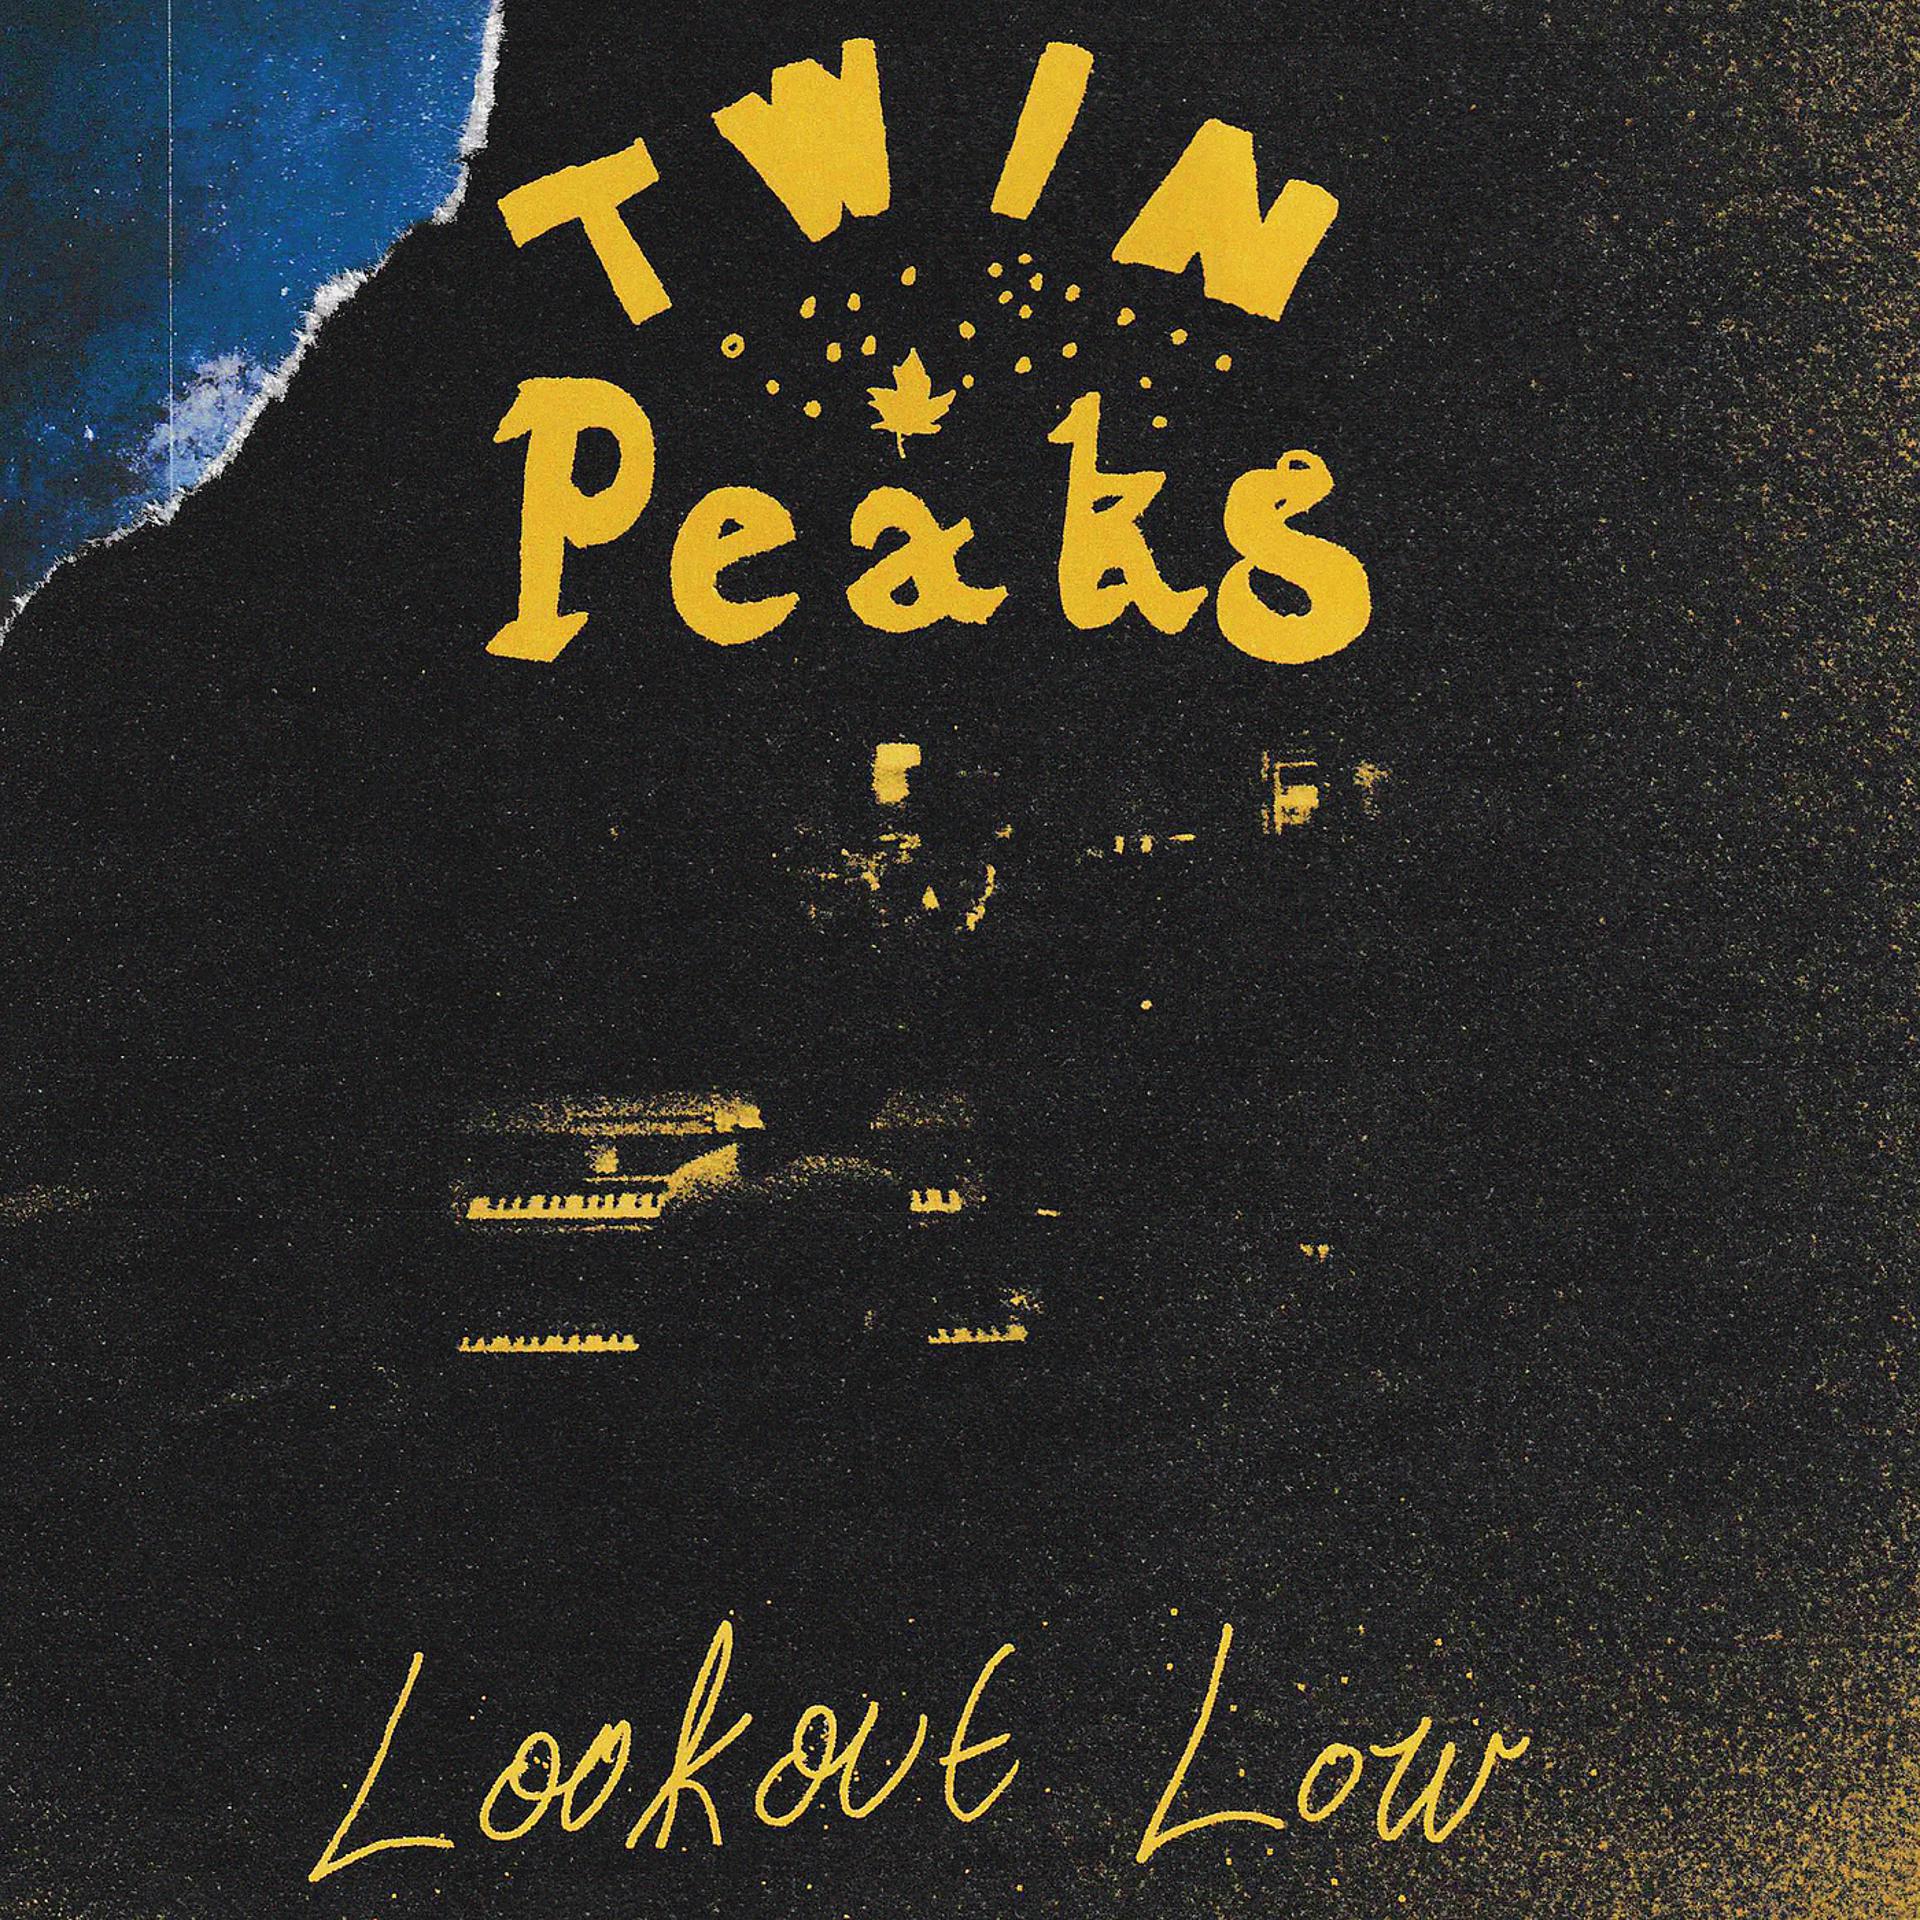 Twin Peaks - фото